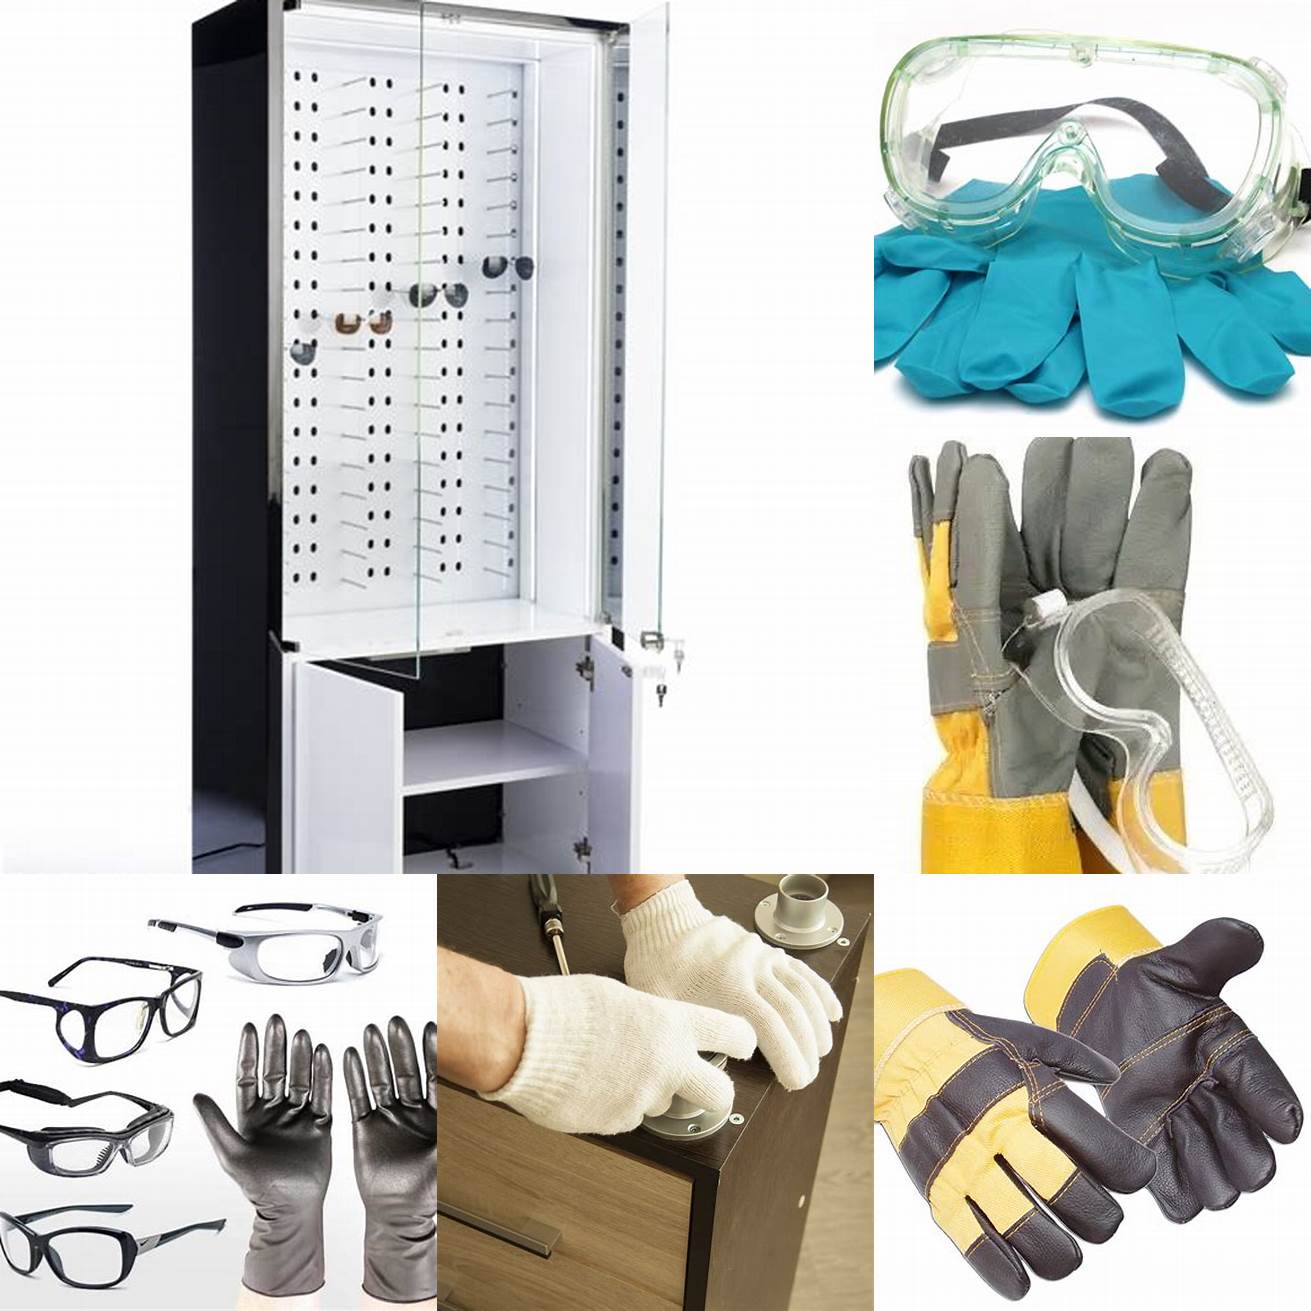 Gloves and Eyewear